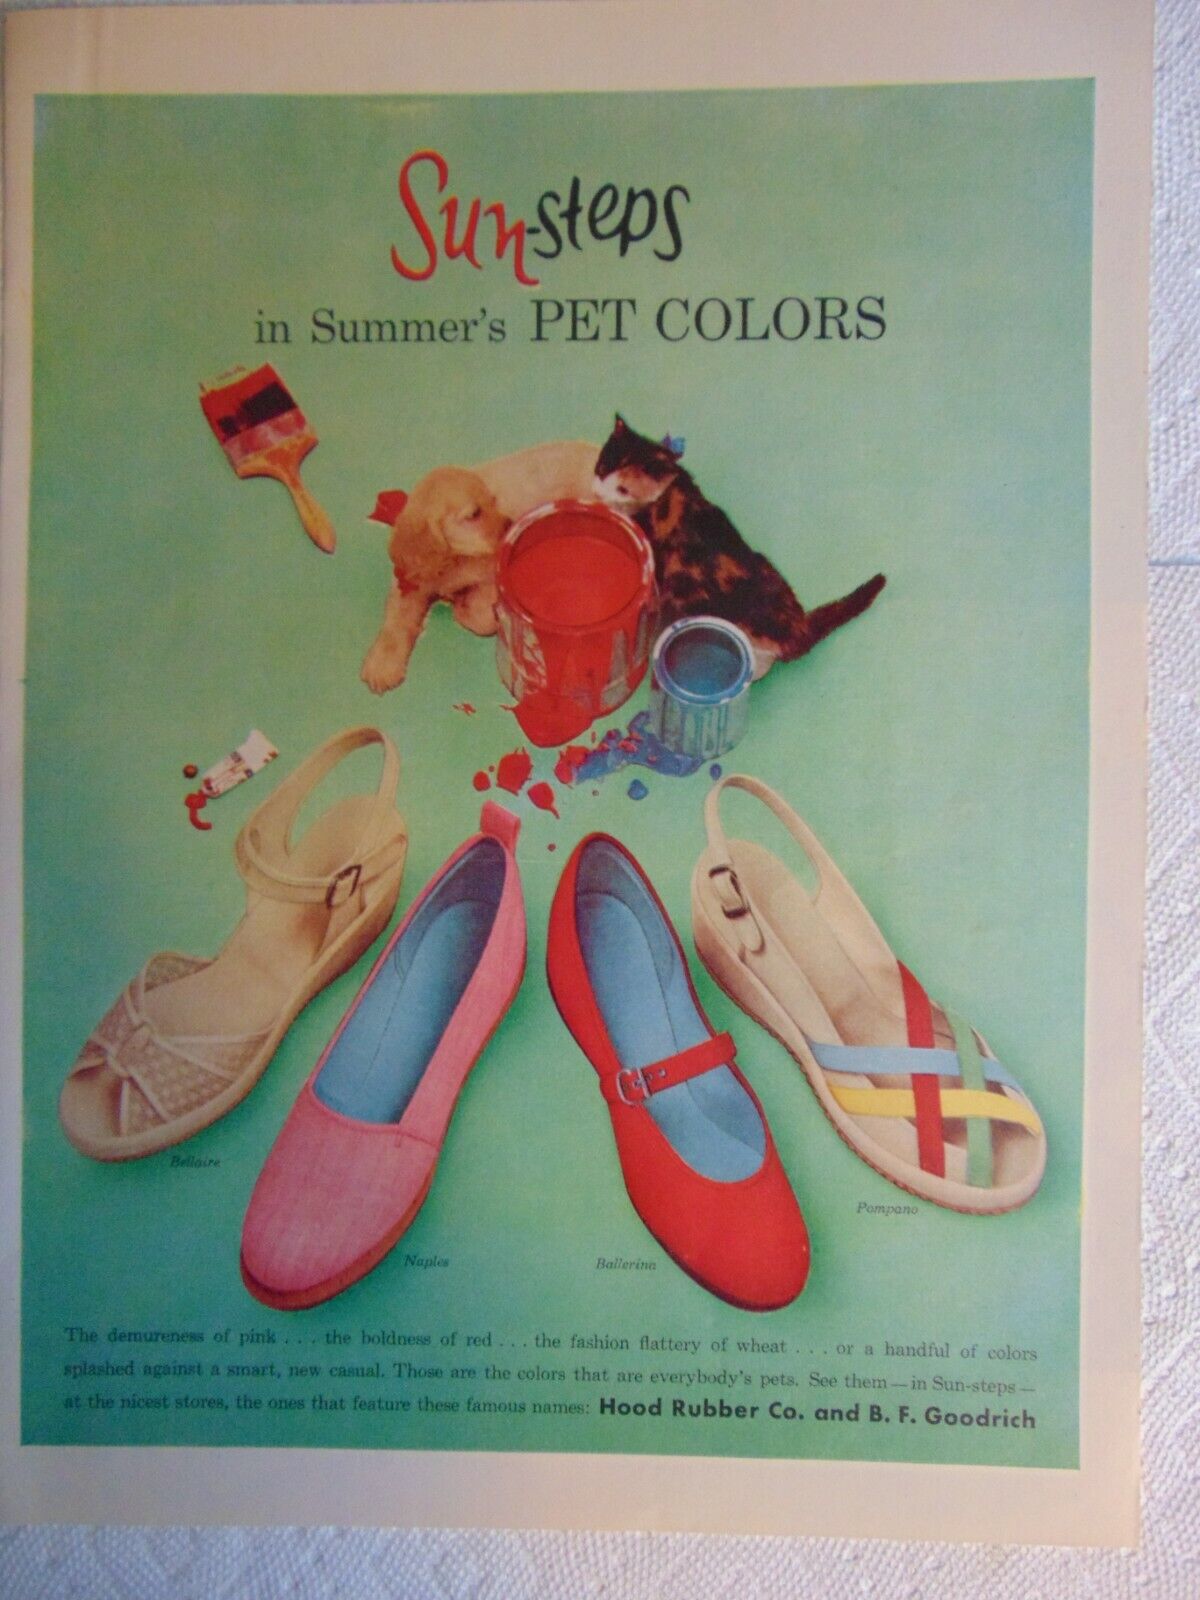 1954 SUN- STEPS FOOTWEAR by HOOD & B.F. GOODRICH Rubber Co. vintage art print ad